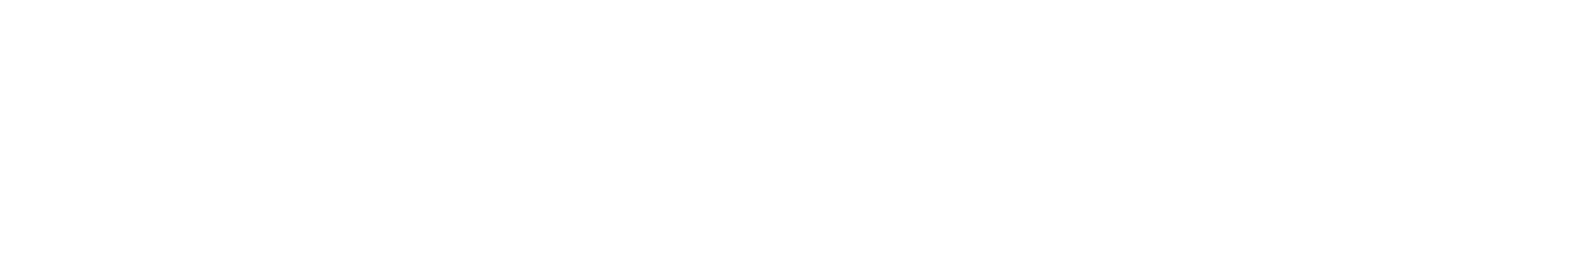 Hampiðjan logo large for dark backgrounds (transparent PNG)